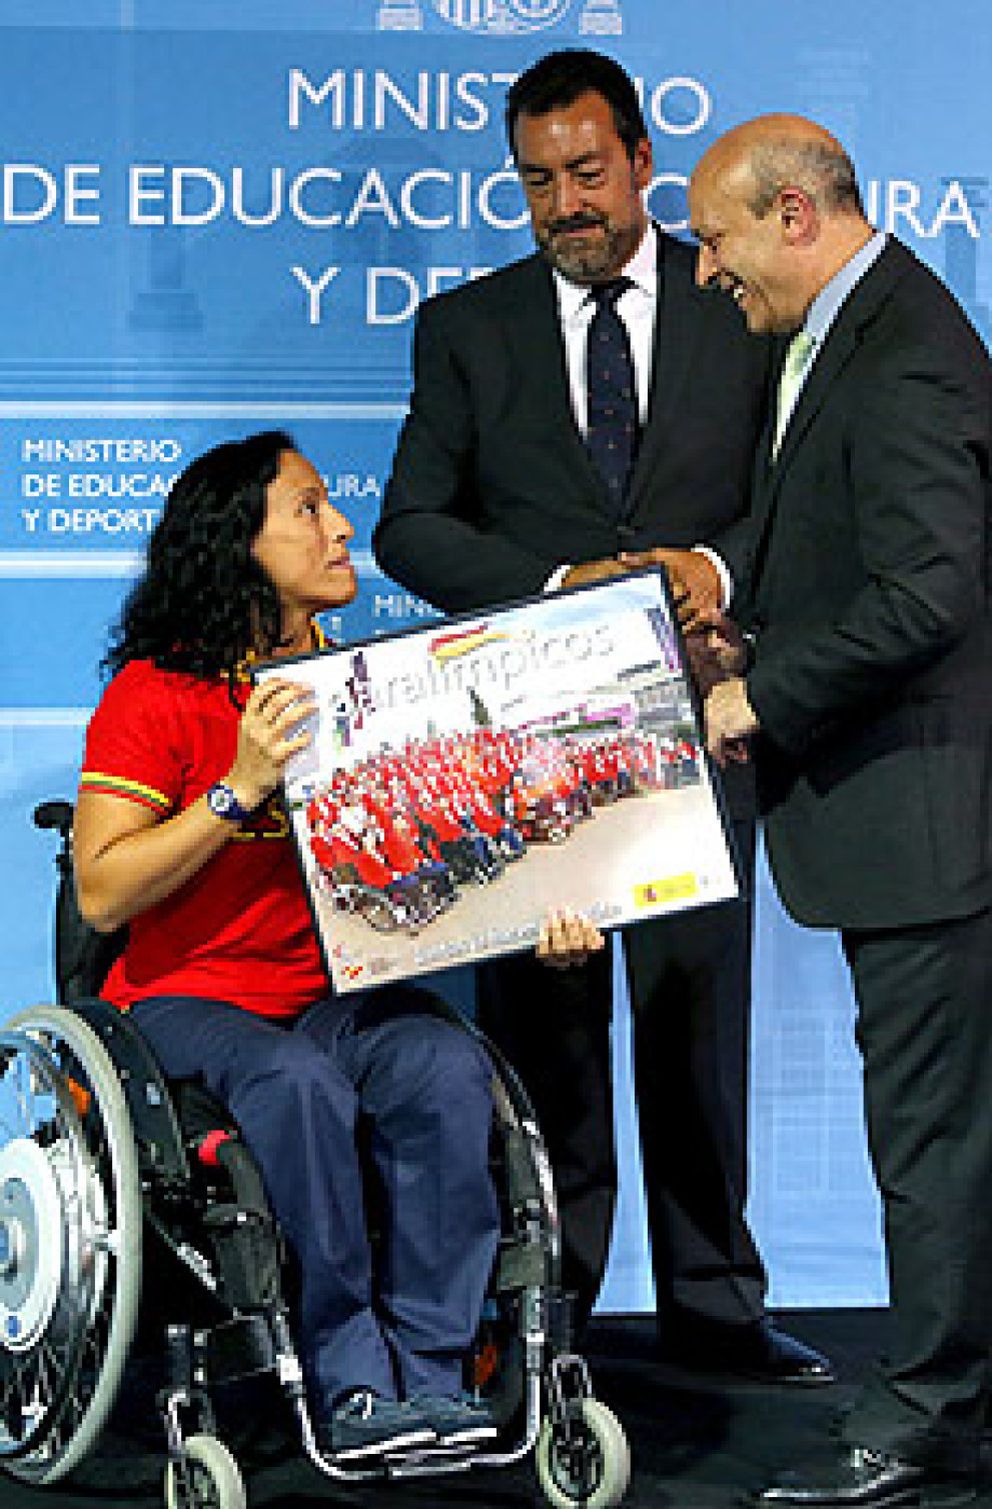 Foto: Wert elogia a los paralímpicos: "Sois mejores que los olímpicos"